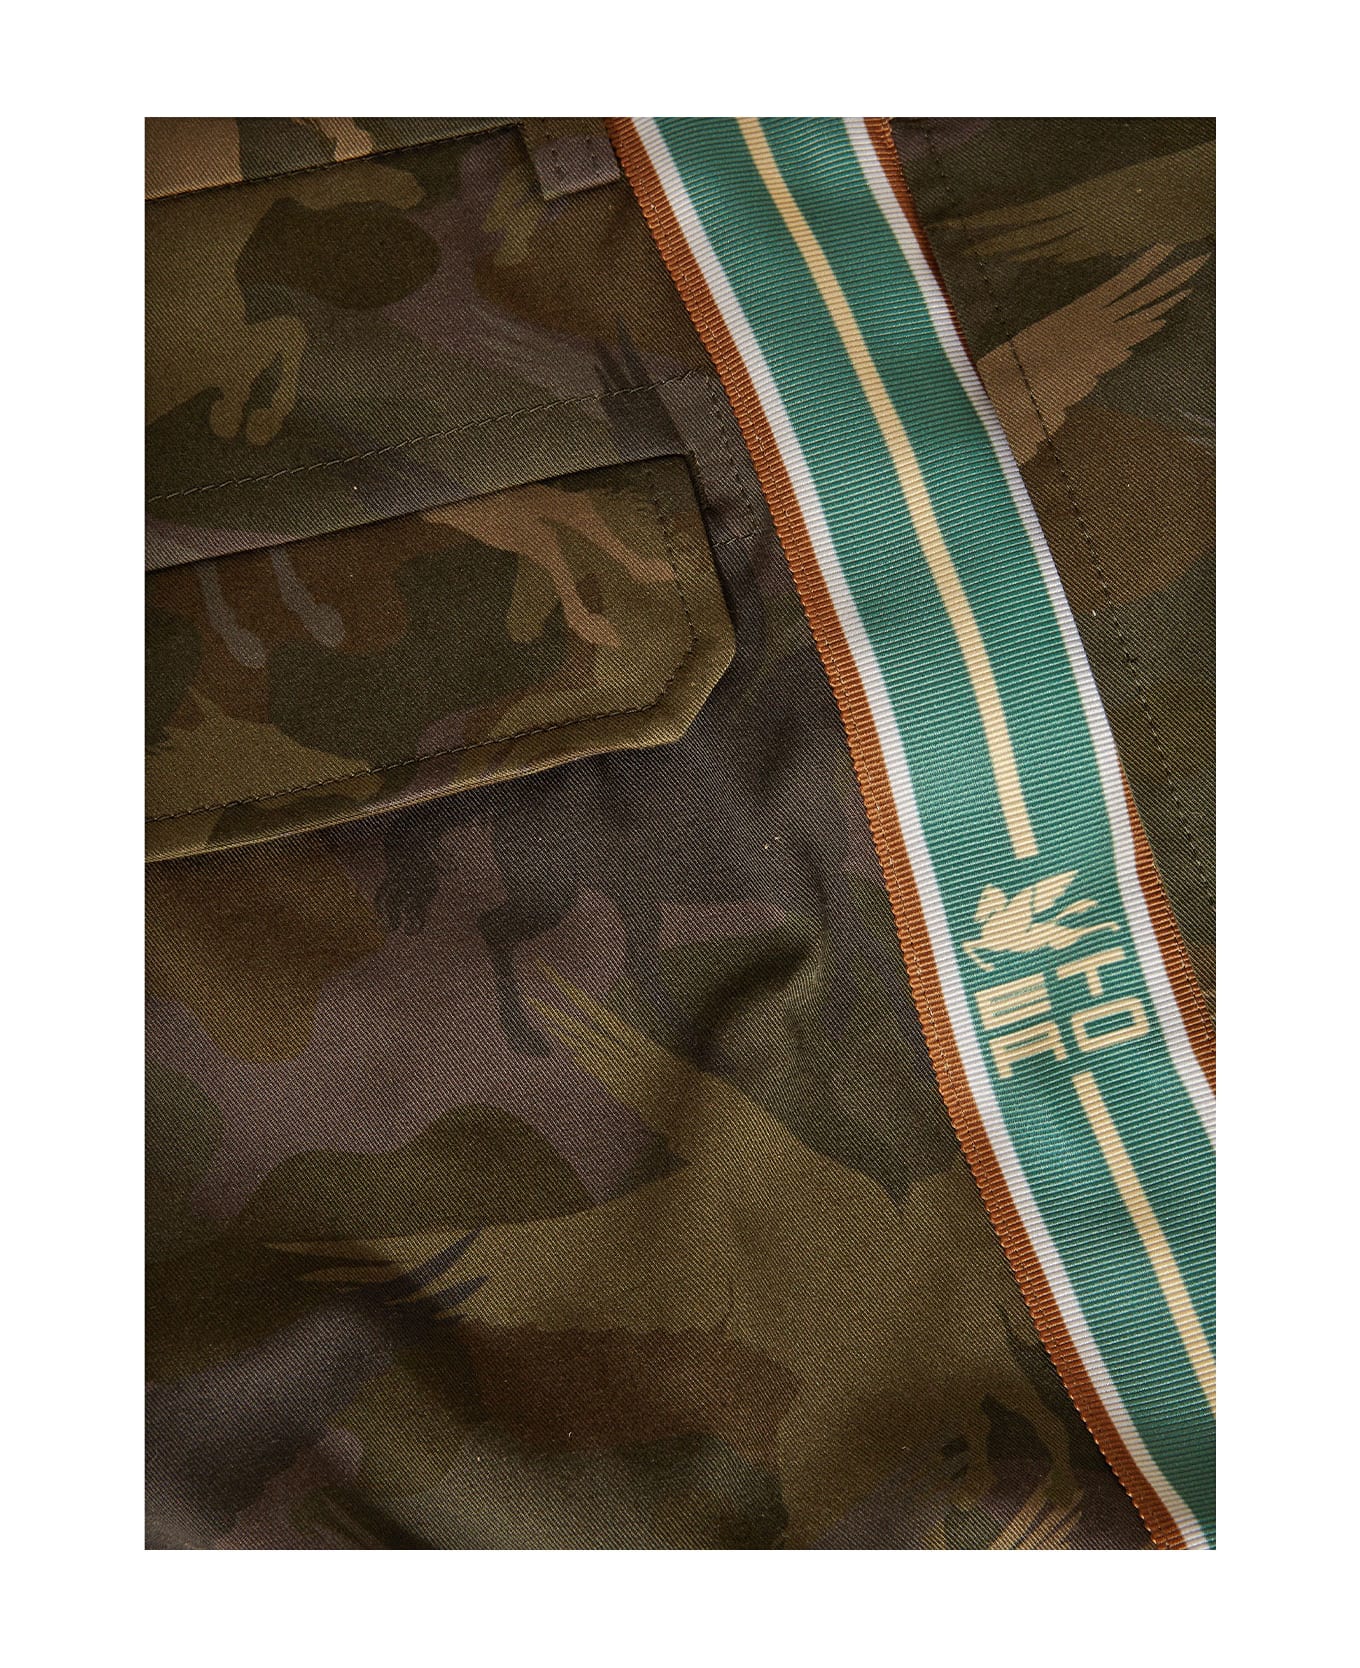 Etro Long Shorts Camouflage - CAMOUFLAGE